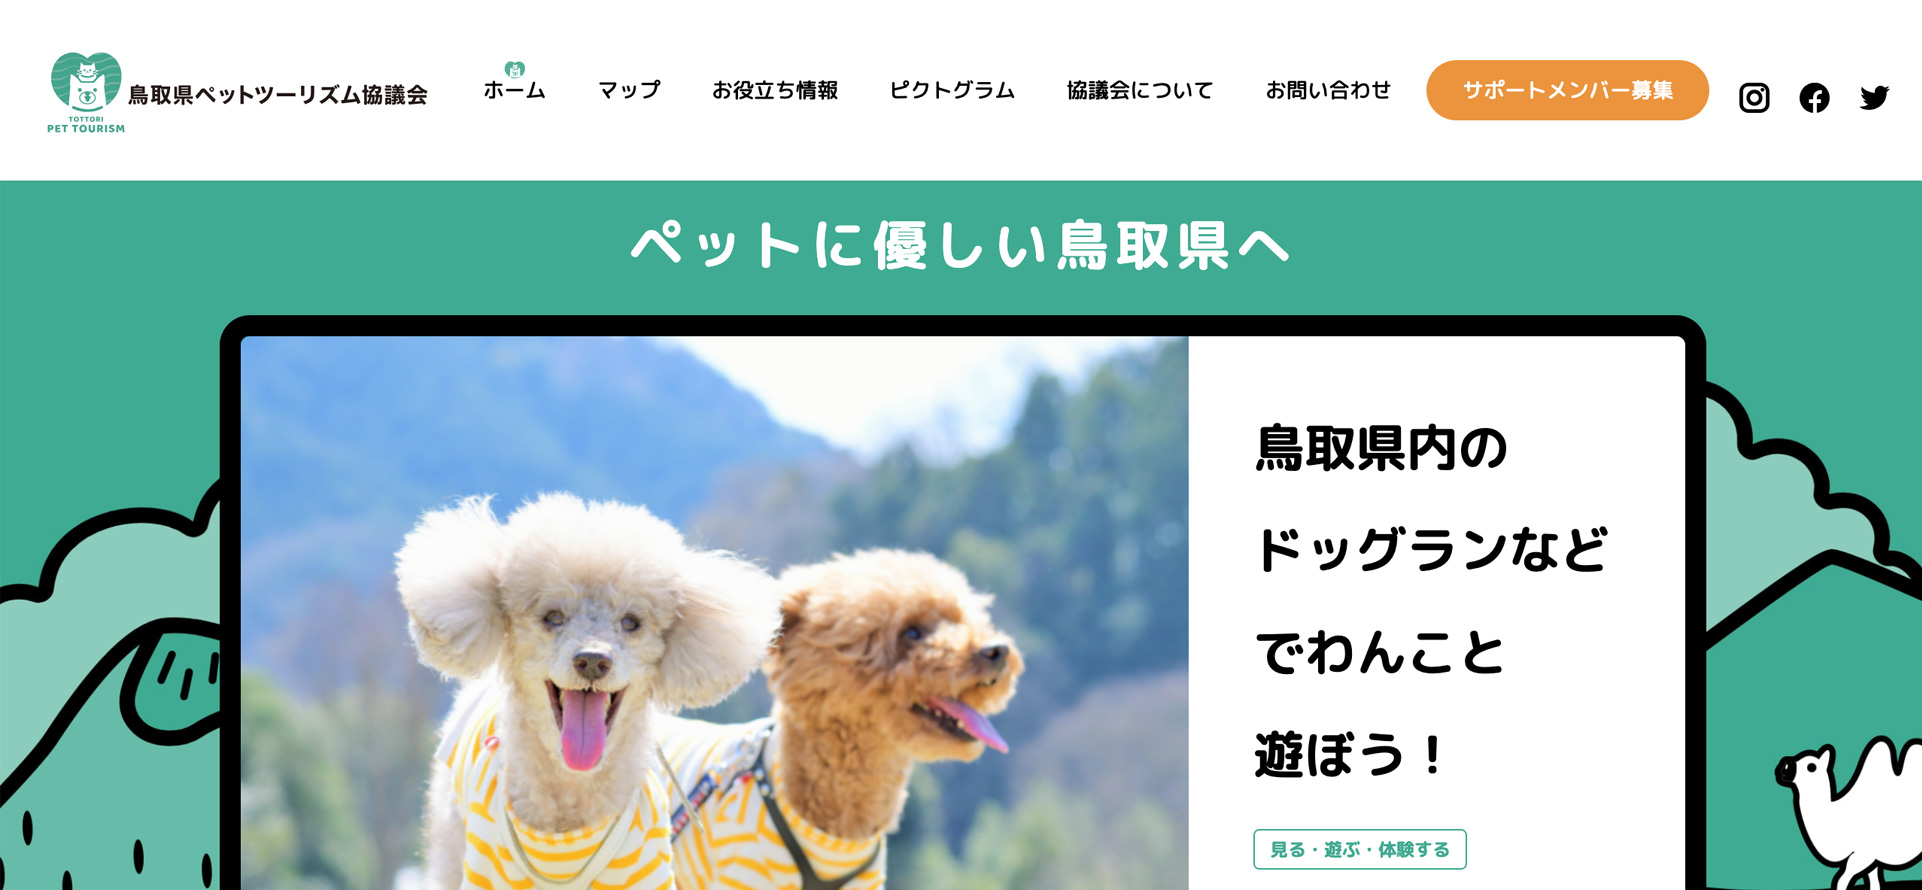 鳥取県ペットツーリズム協議会様HPのファーストビュー